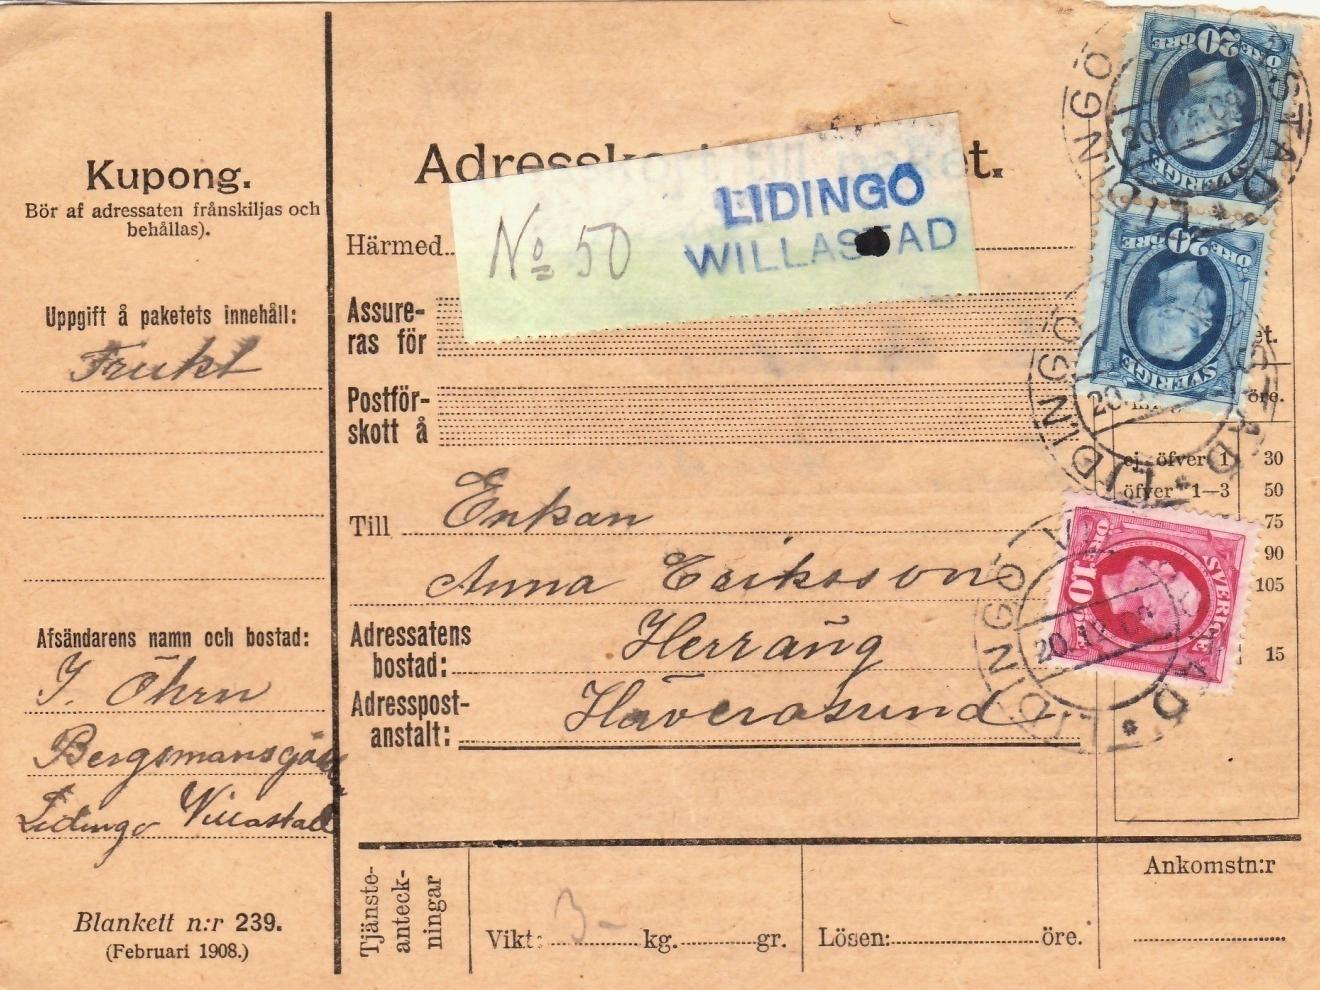 Paketavi från LIDINGÖ VILLASTAD 20/12 1909 Poststationen ändrade namn till LIDINGÖ VILLASTAD 1/9 1908 och till